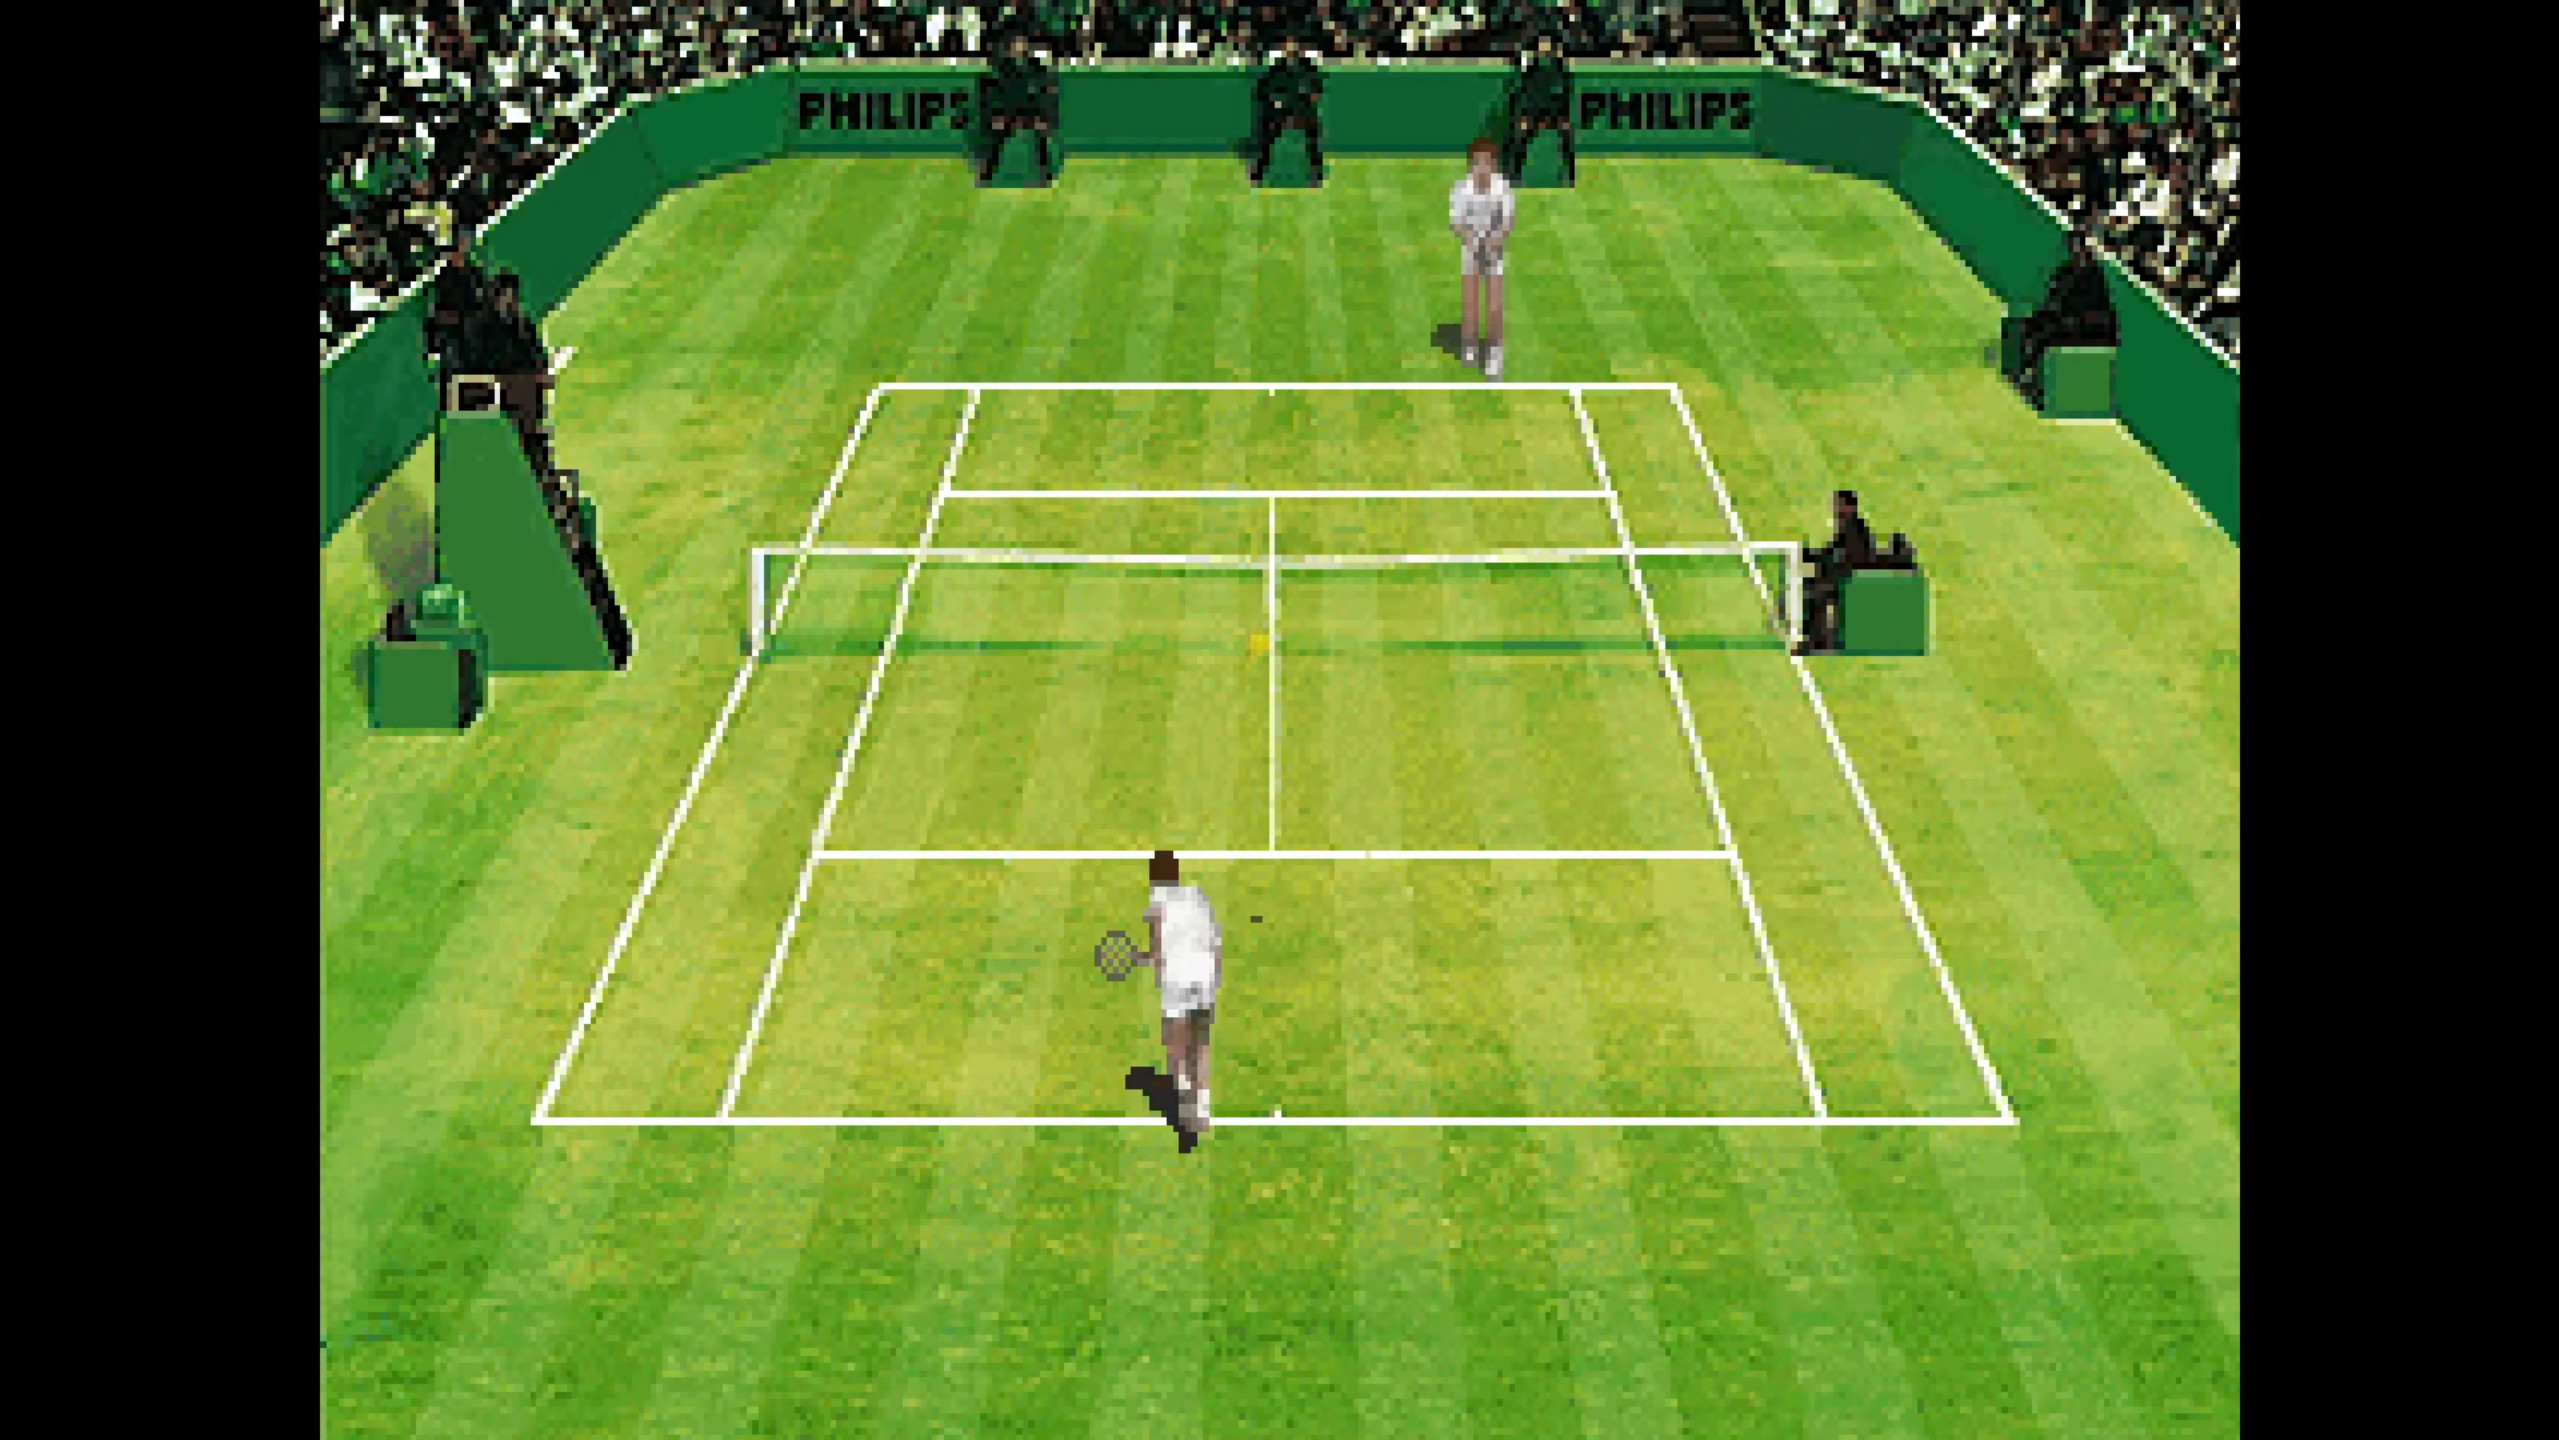 International Tennis Open screenshot